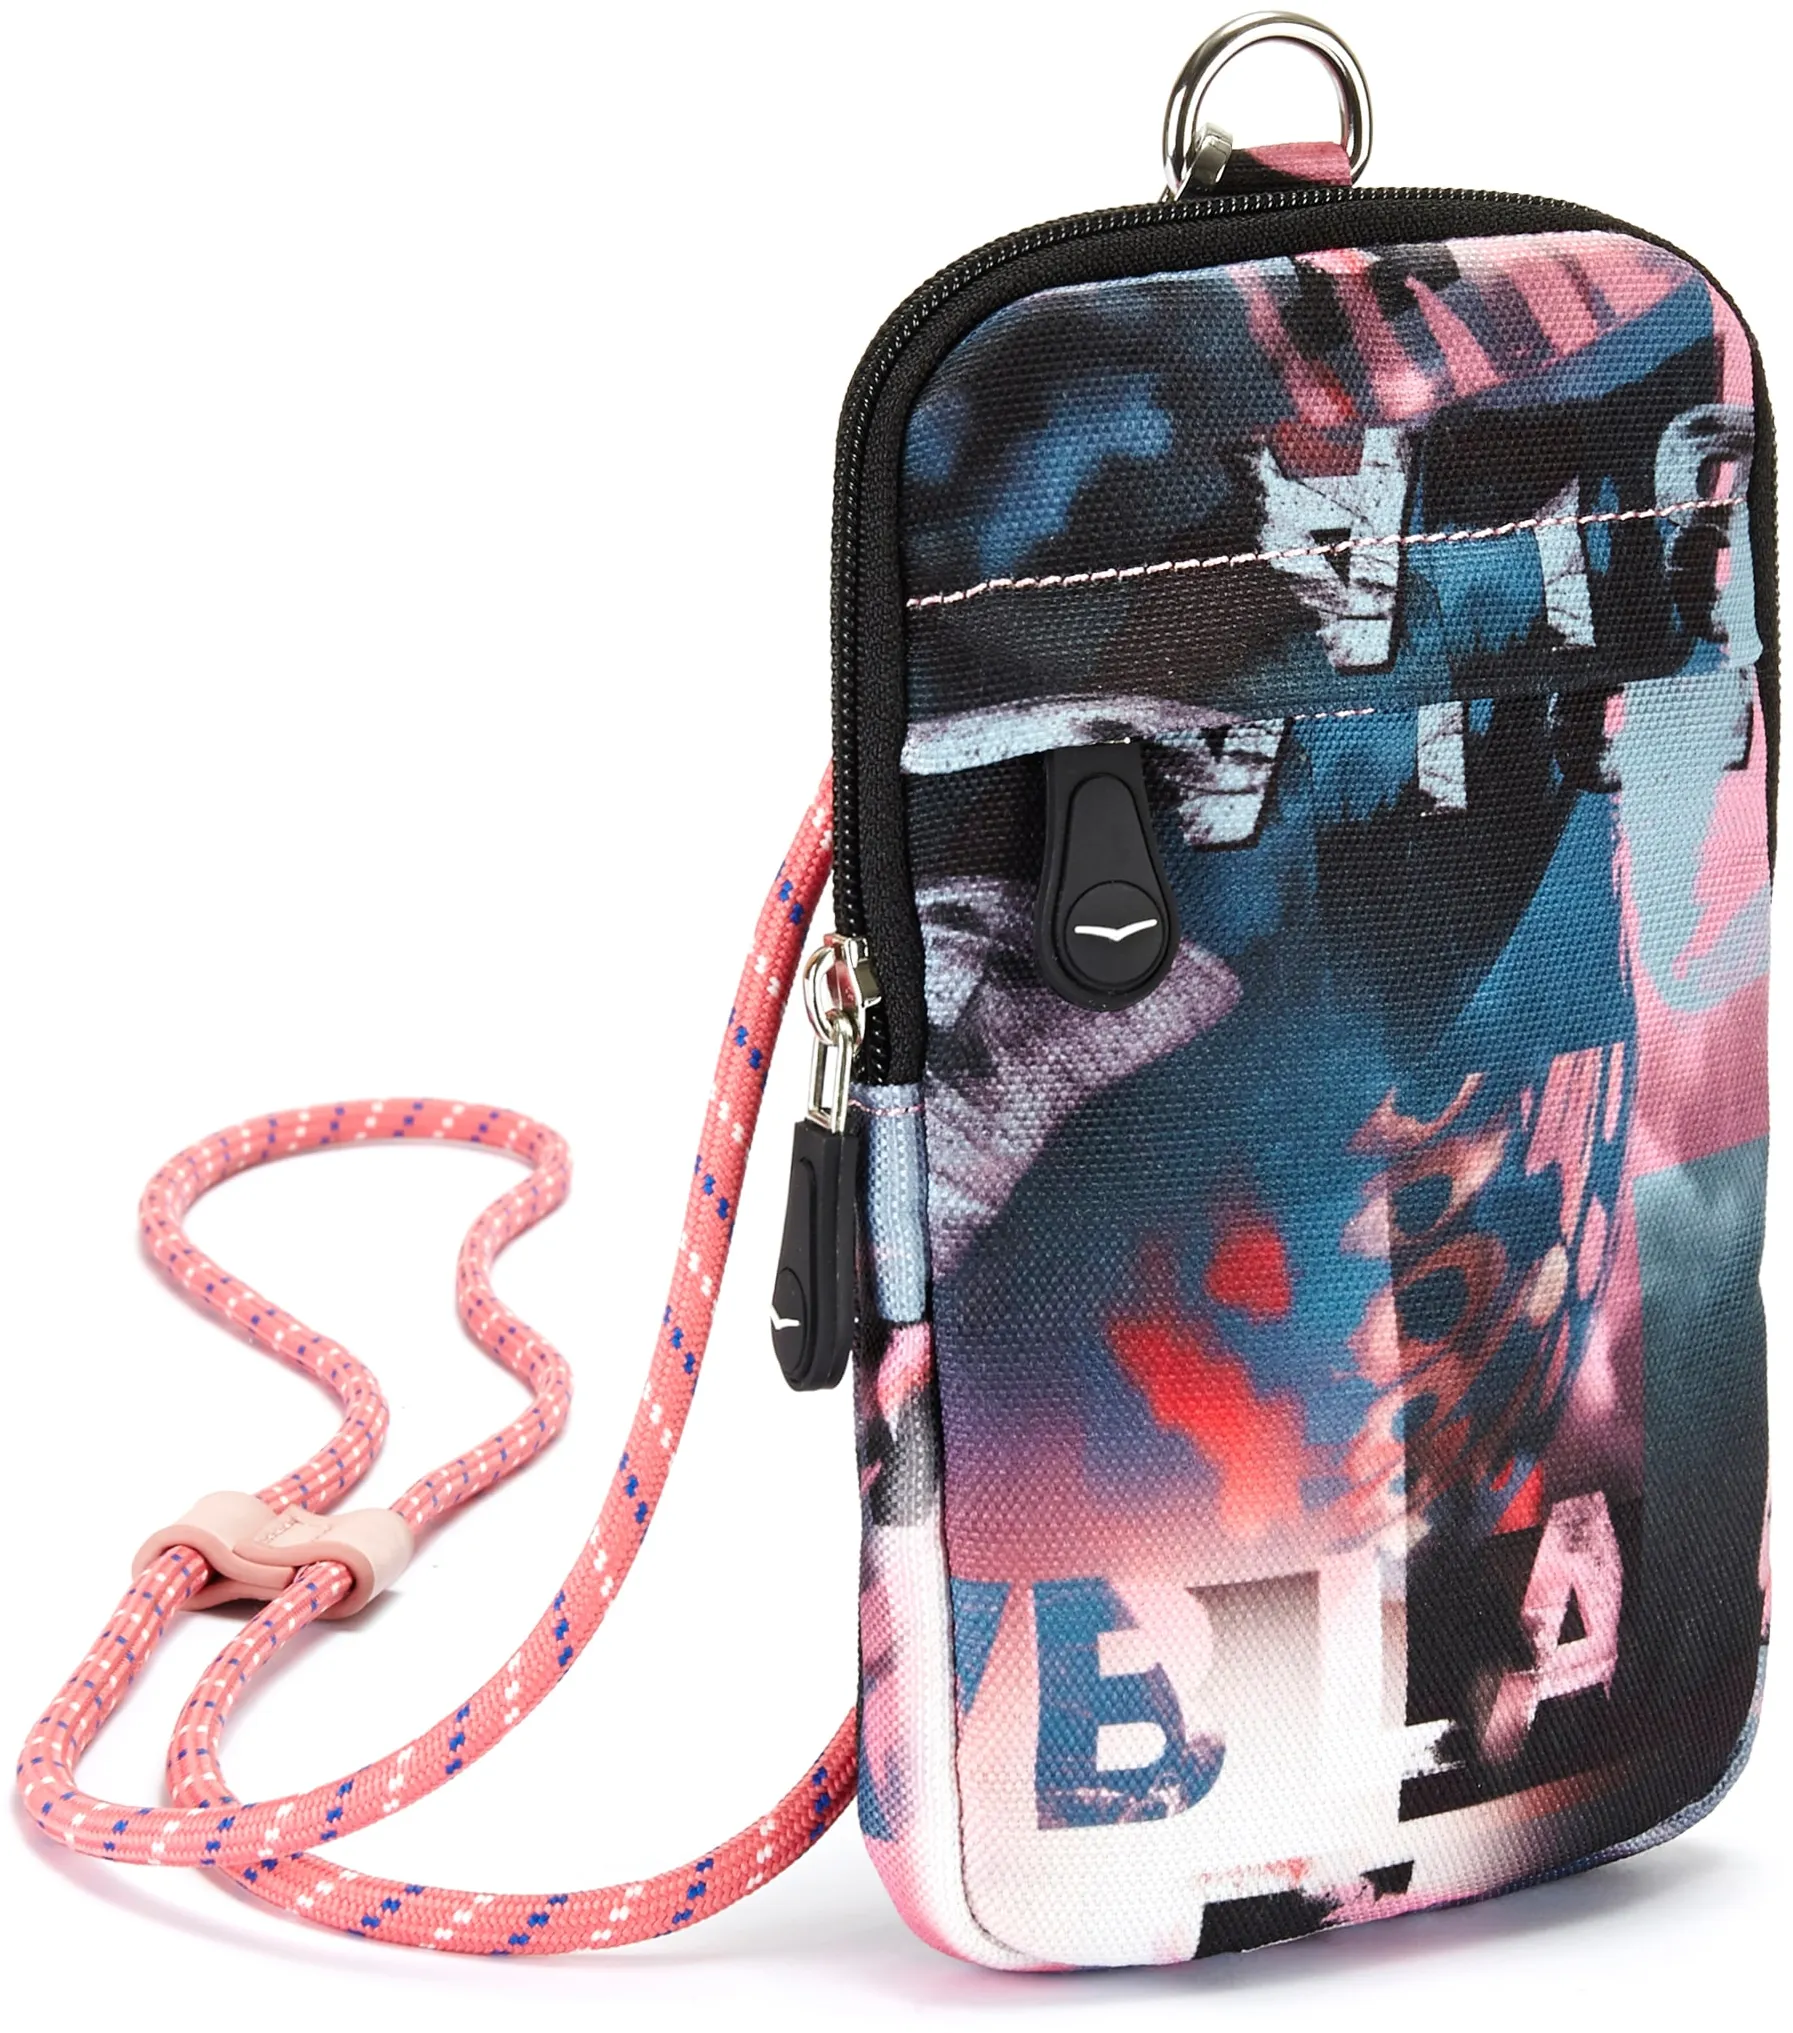 Handytasche VENICE BEACH Gr. B/H: 12 cm x 19 cm, bunt (bedruckt) Damen Taschen Smartphone Case Tasche kleine Umhängetasche, Minibag, Crossbody-Bag, sportlich VEGAN